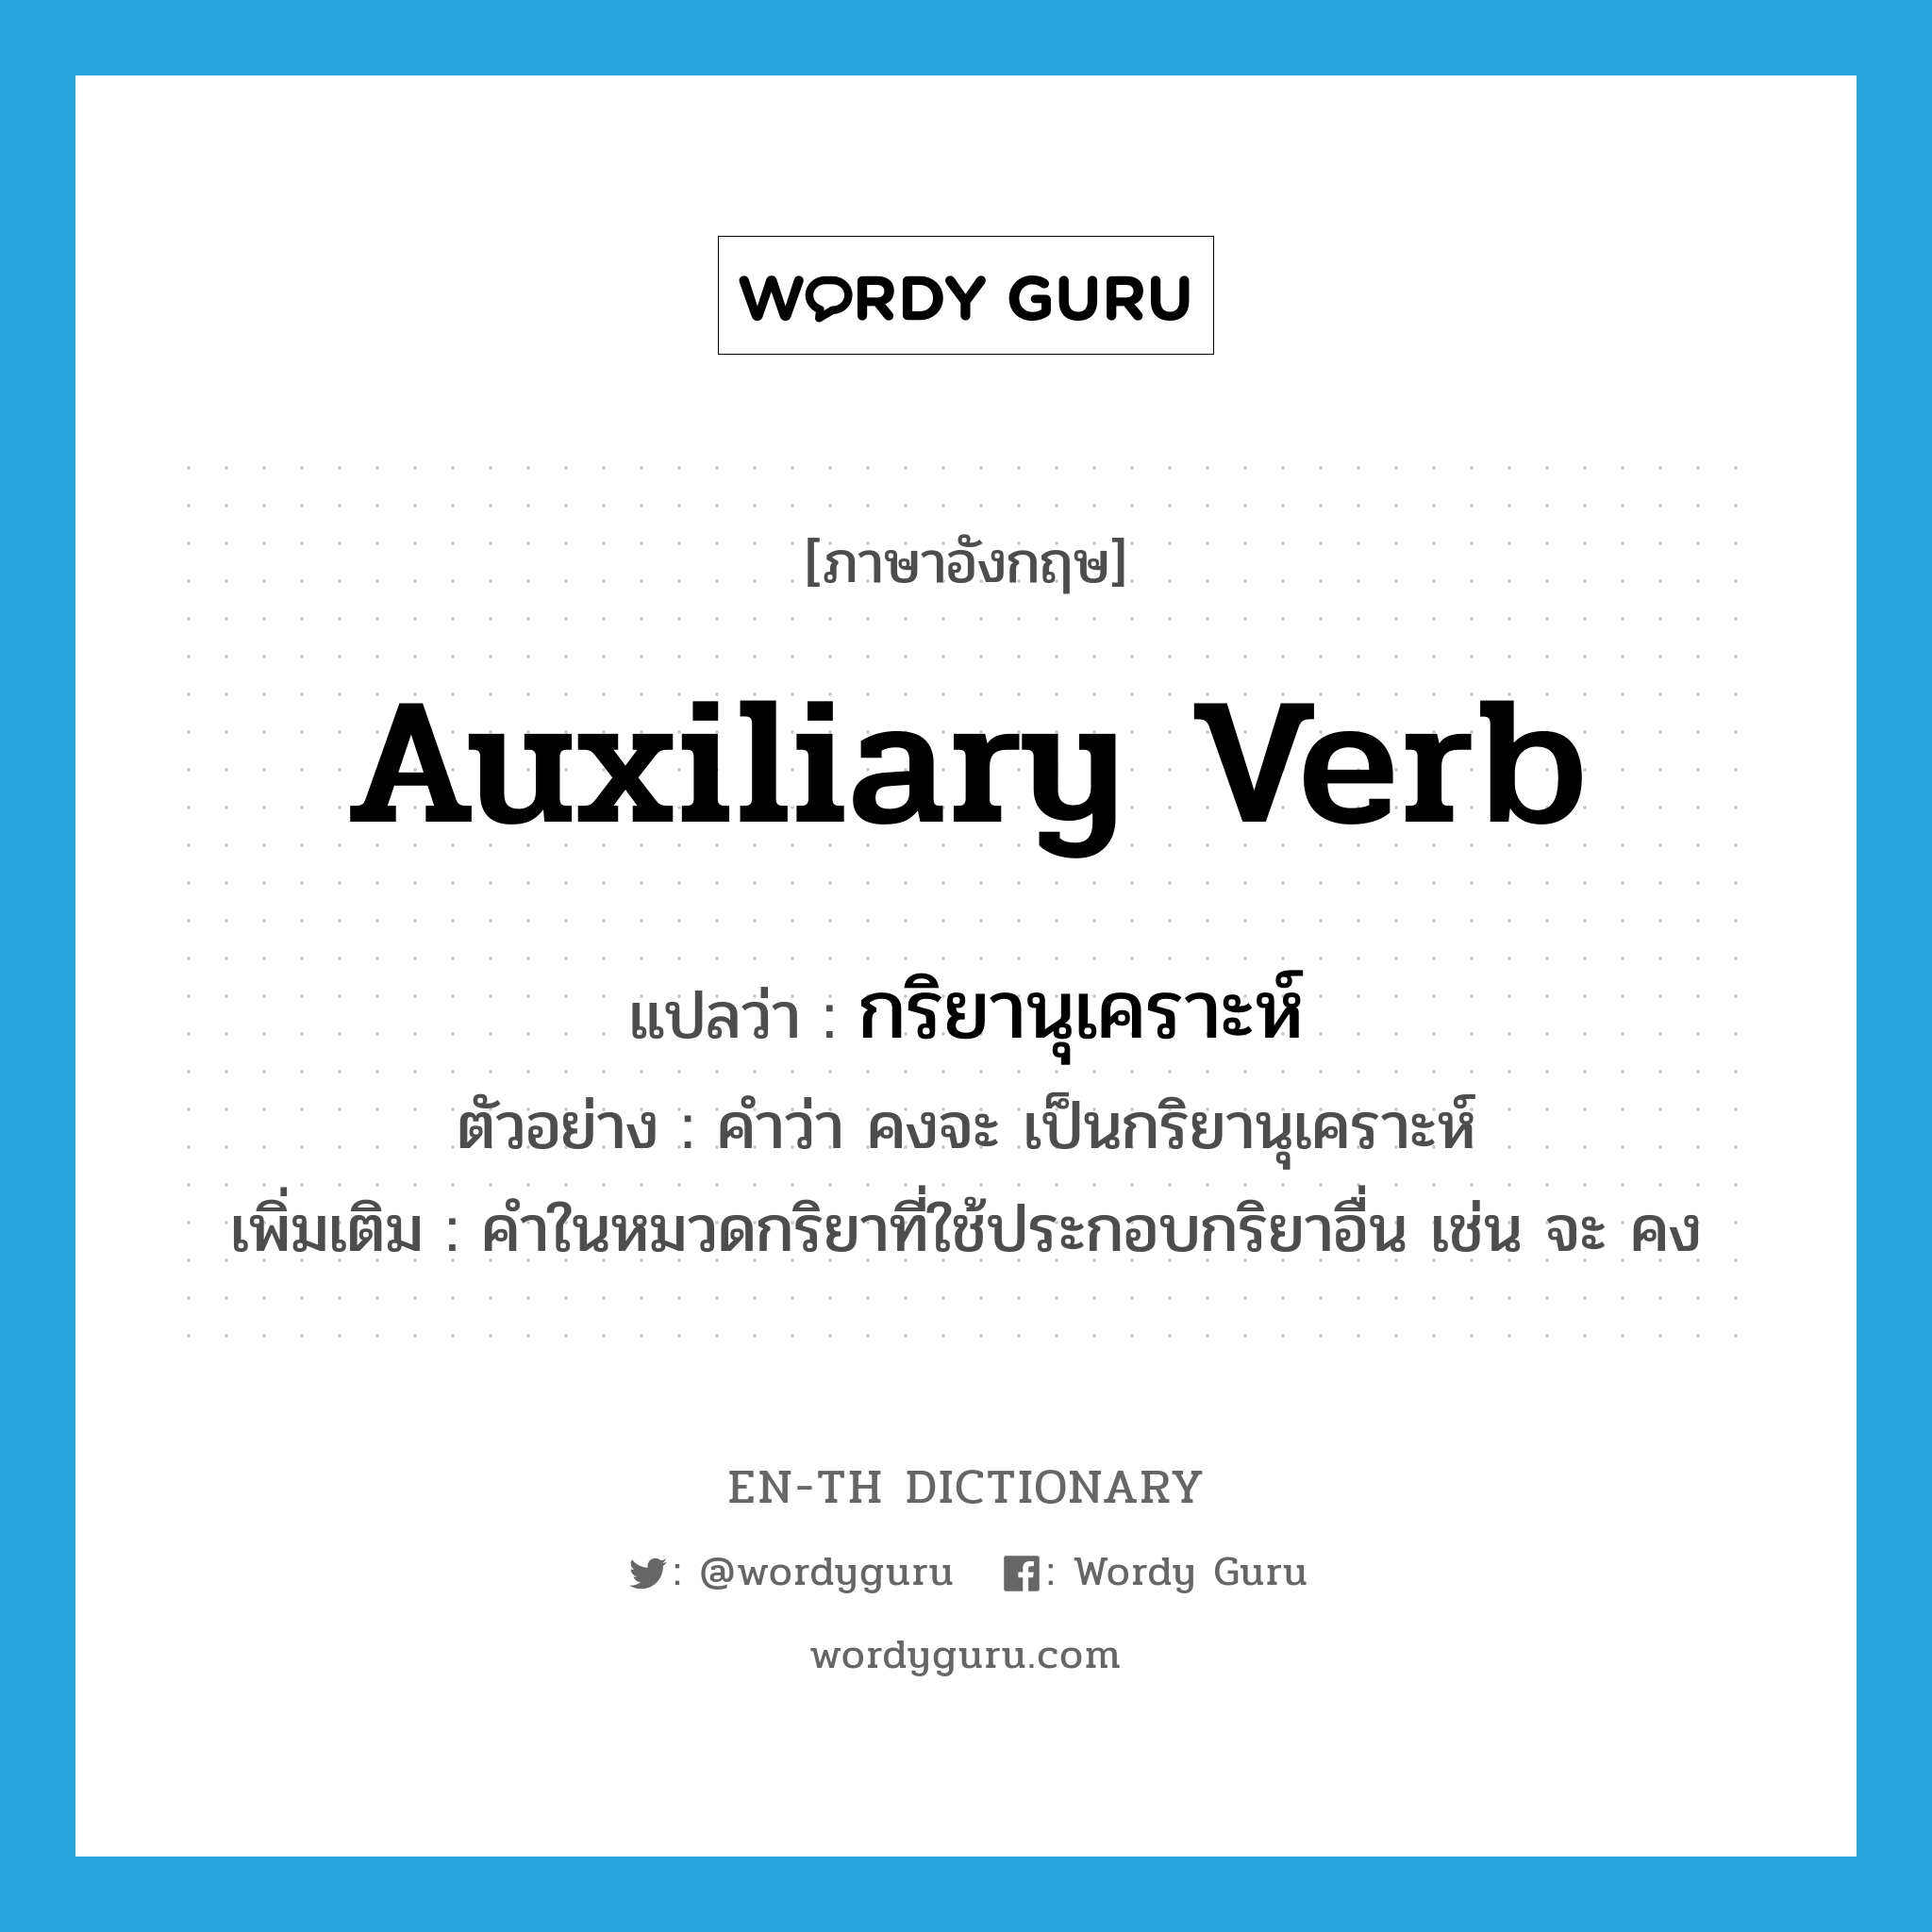 auxiliary verb แปลว่า?, คำศัพท์ภาษาอังกฤษ auxiliary verb แปลว่า กริยานุเคราะห์ ประเภท N ตัวอย่าง คำว่า คงจะ เป็นกริยานุเคราะห์ เพิ่มเติม คำในหมวดกริยาที่ใช้ประกอบกริยาอื่น เช่น จะ คง หมวด N